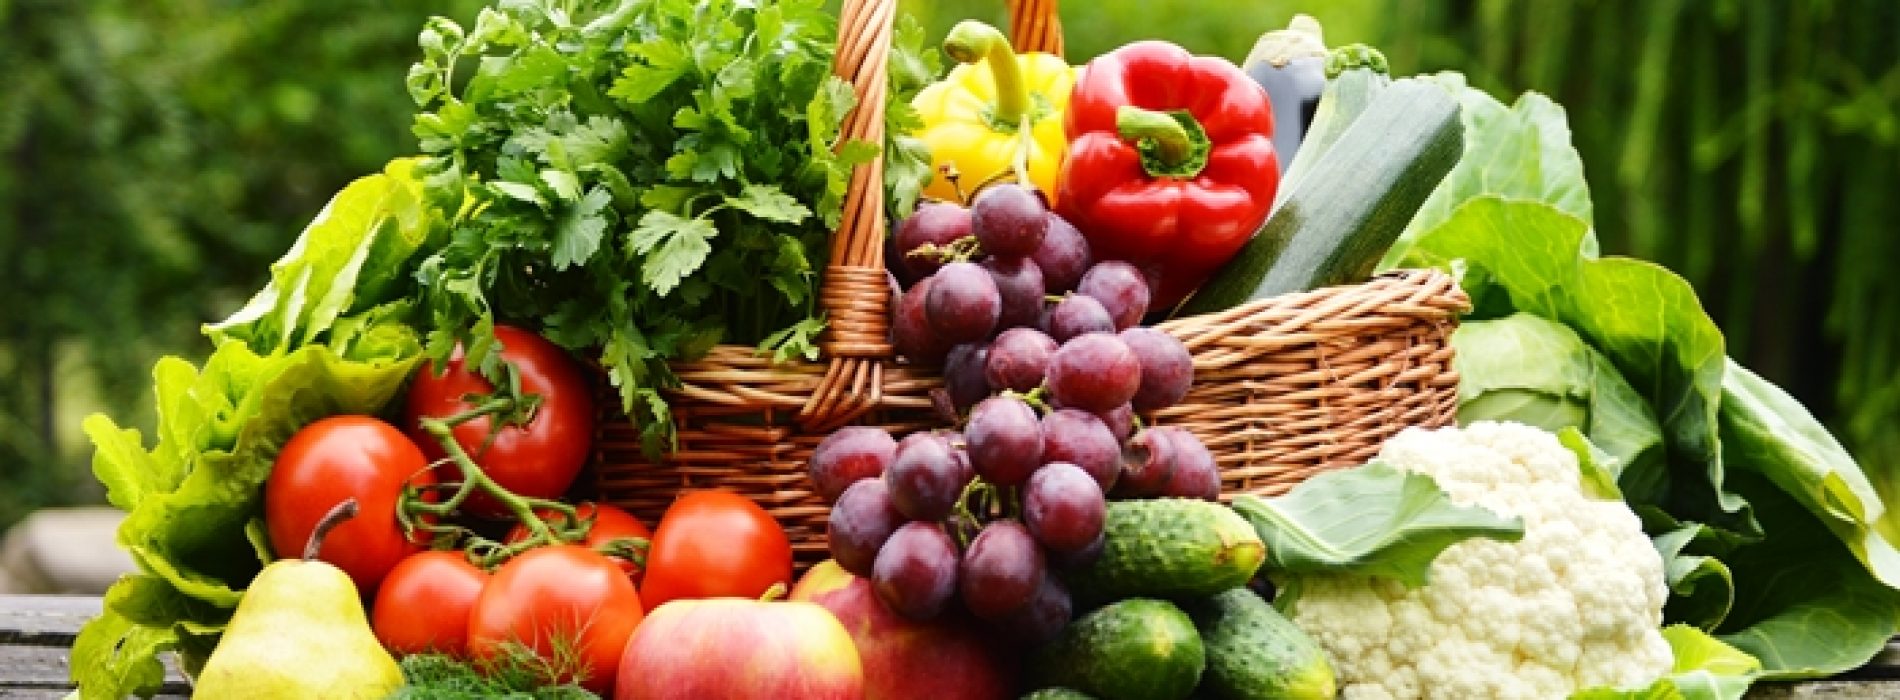 Fruit en groente: hoe kun je optimaal profiteren van hun goede eigenschappen?